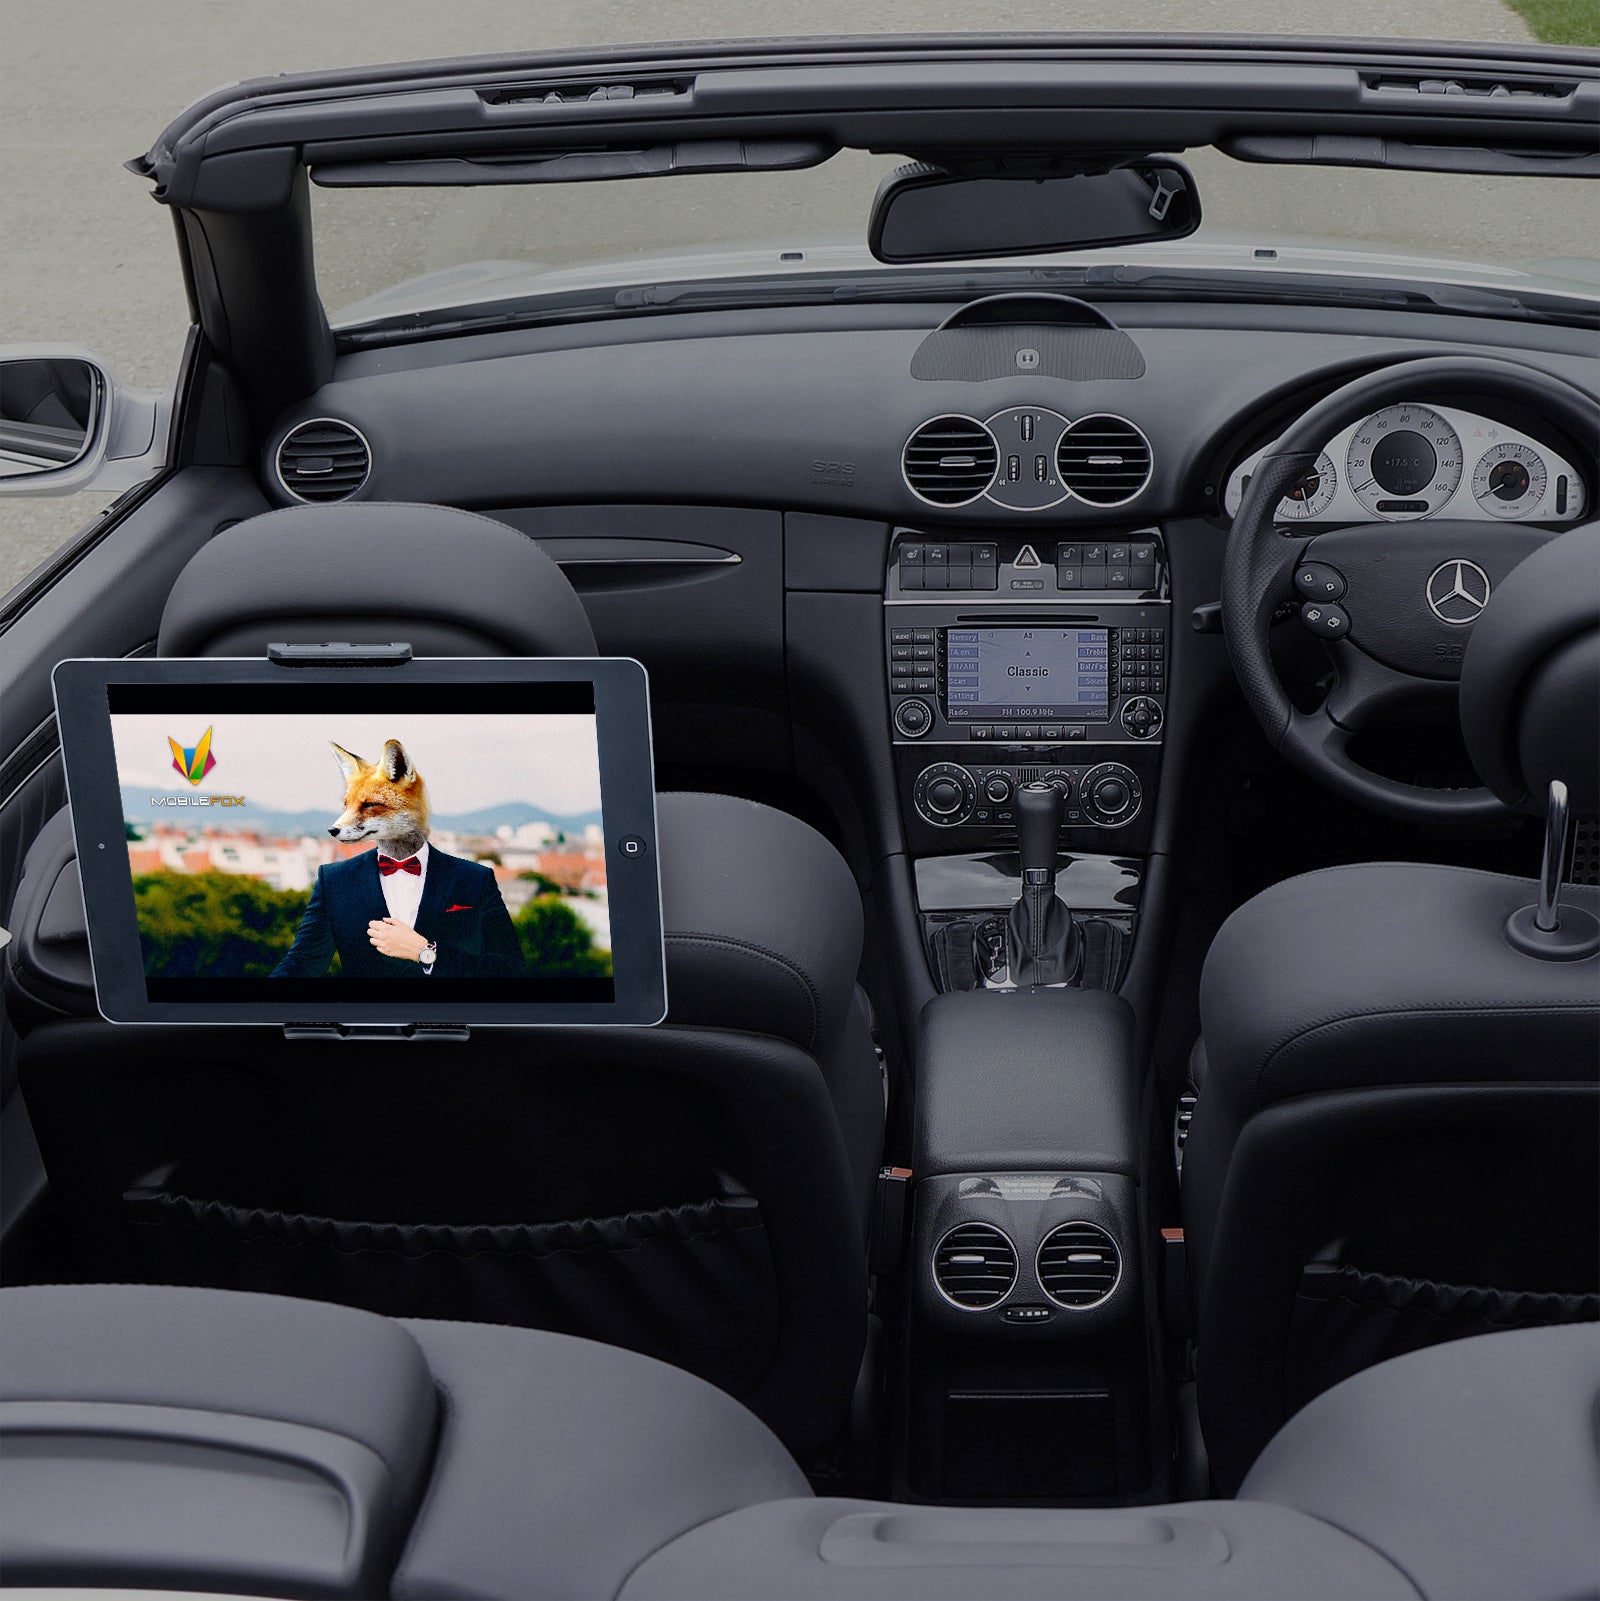 Mobilefox 360° KFZ Kopfstützen Tablet Halterung Auto Kugelgelenk Halter für Universal